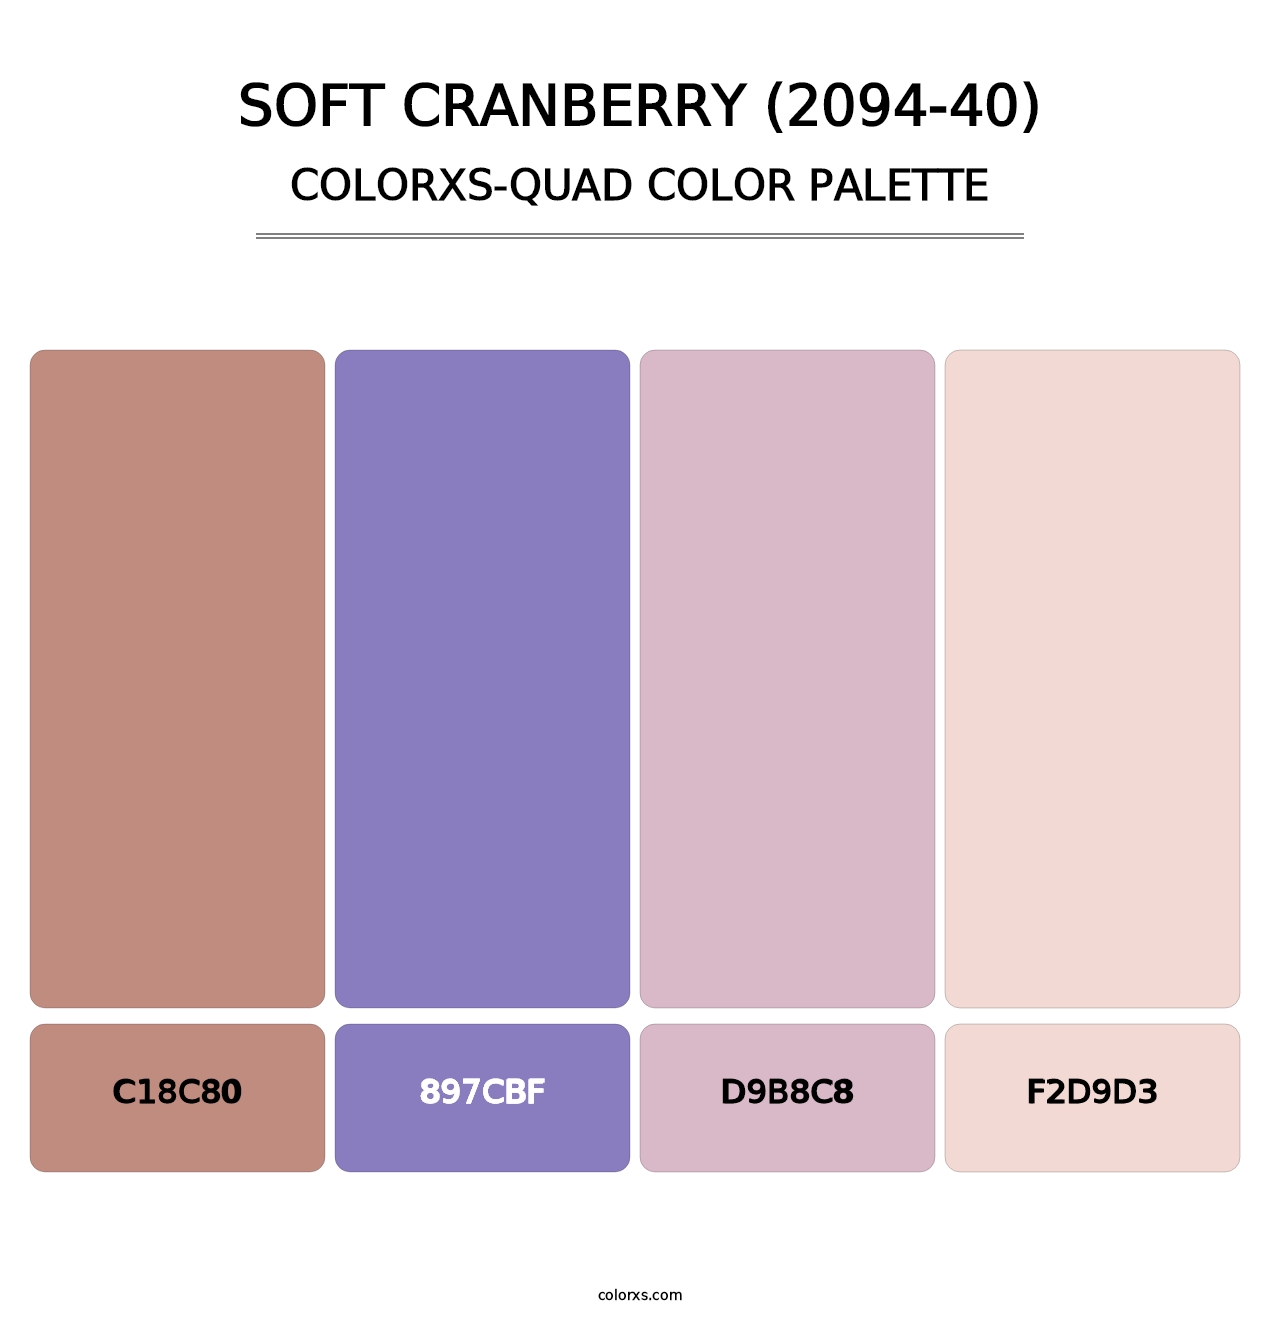 Soft Cranberry (2094-40) - Colorxs Quad Palette